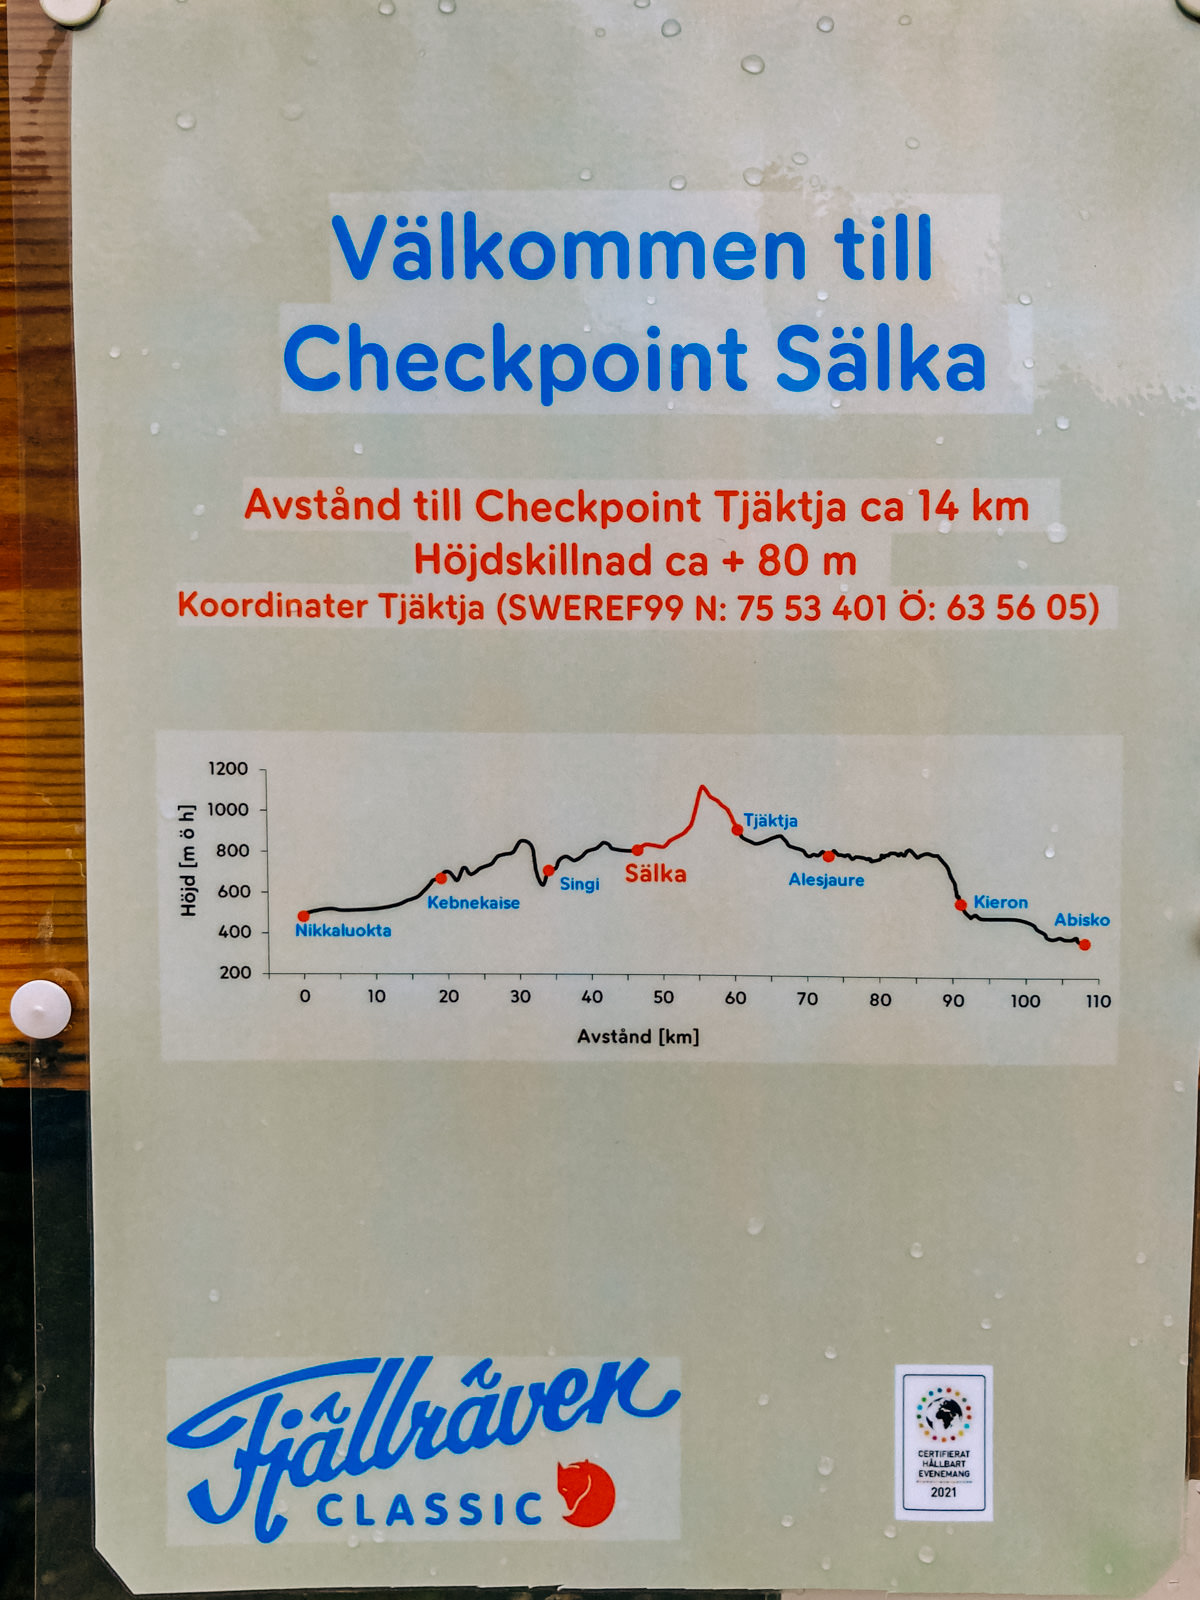 Checkpoint Sälka Info beim Fjällräven Classic